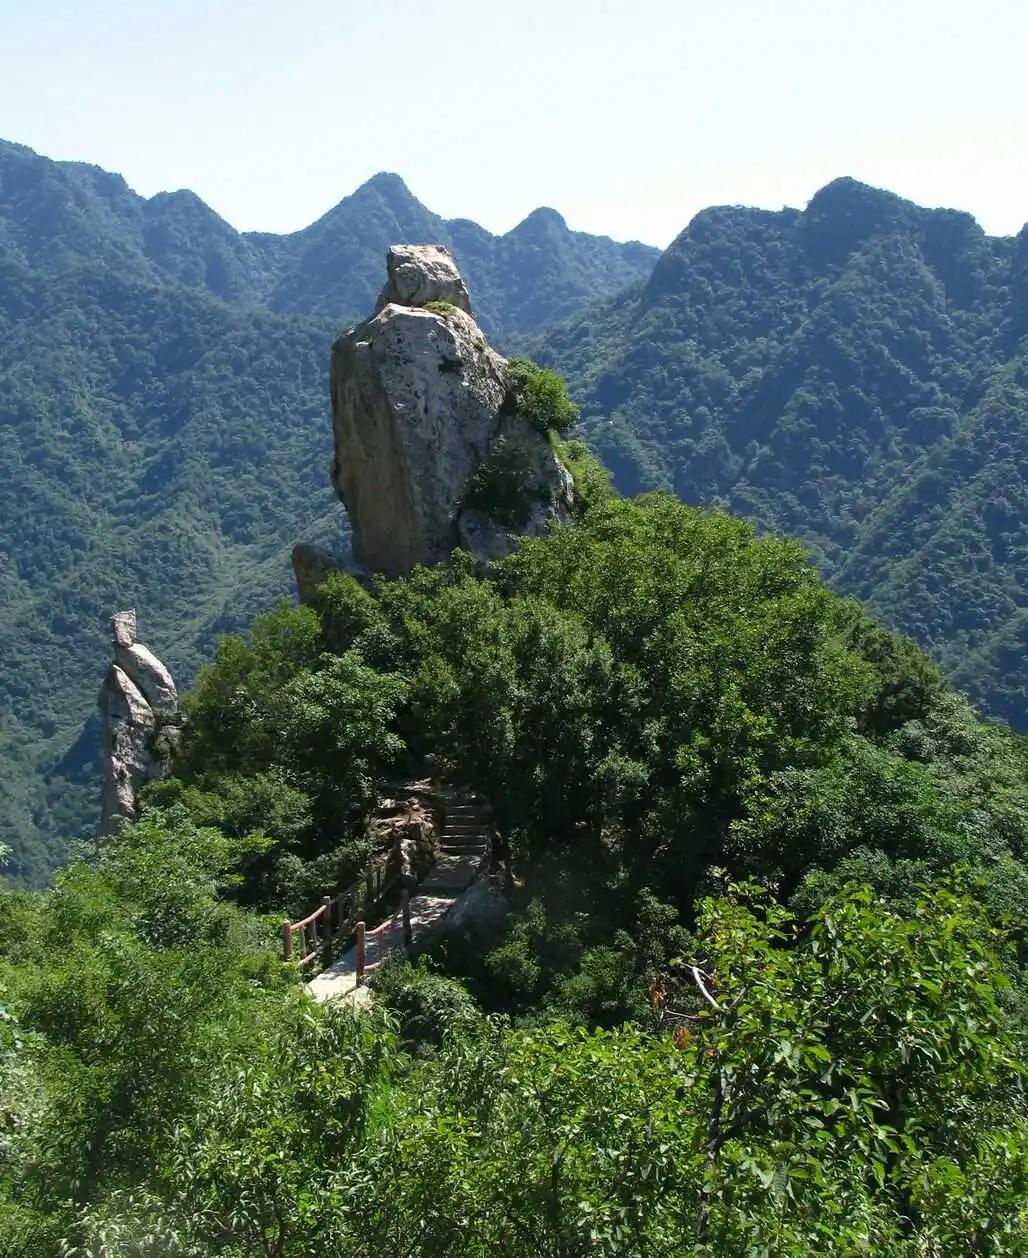 翠华山,又名太乙山,位于陕西省西安市长安区太乙宫镇